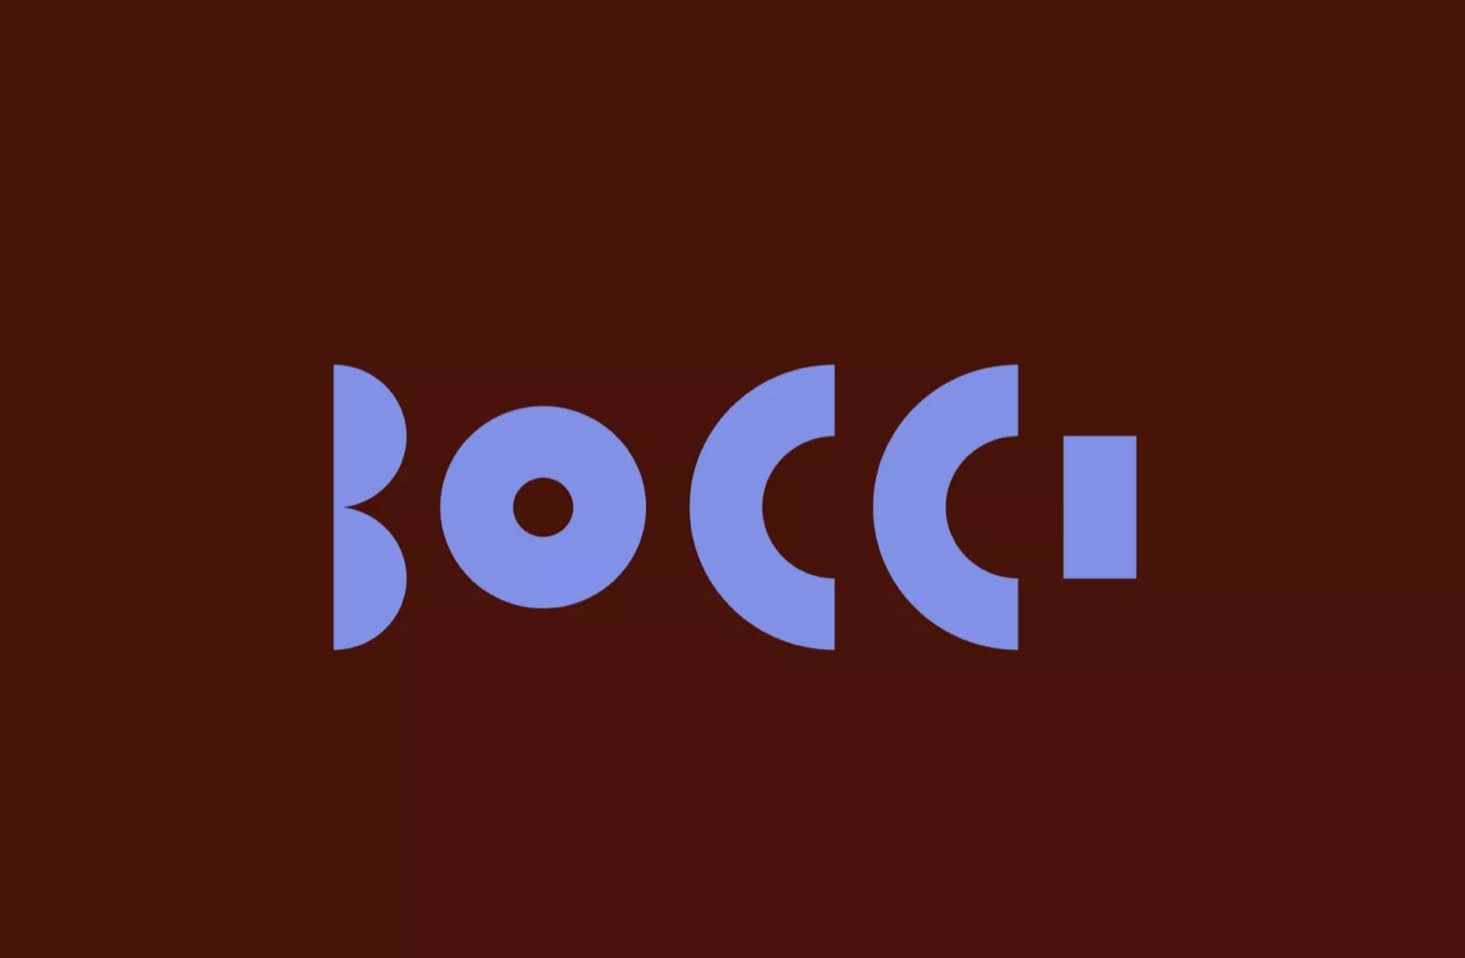 Лондонская студия Frith разработала новую айдентику Bocci